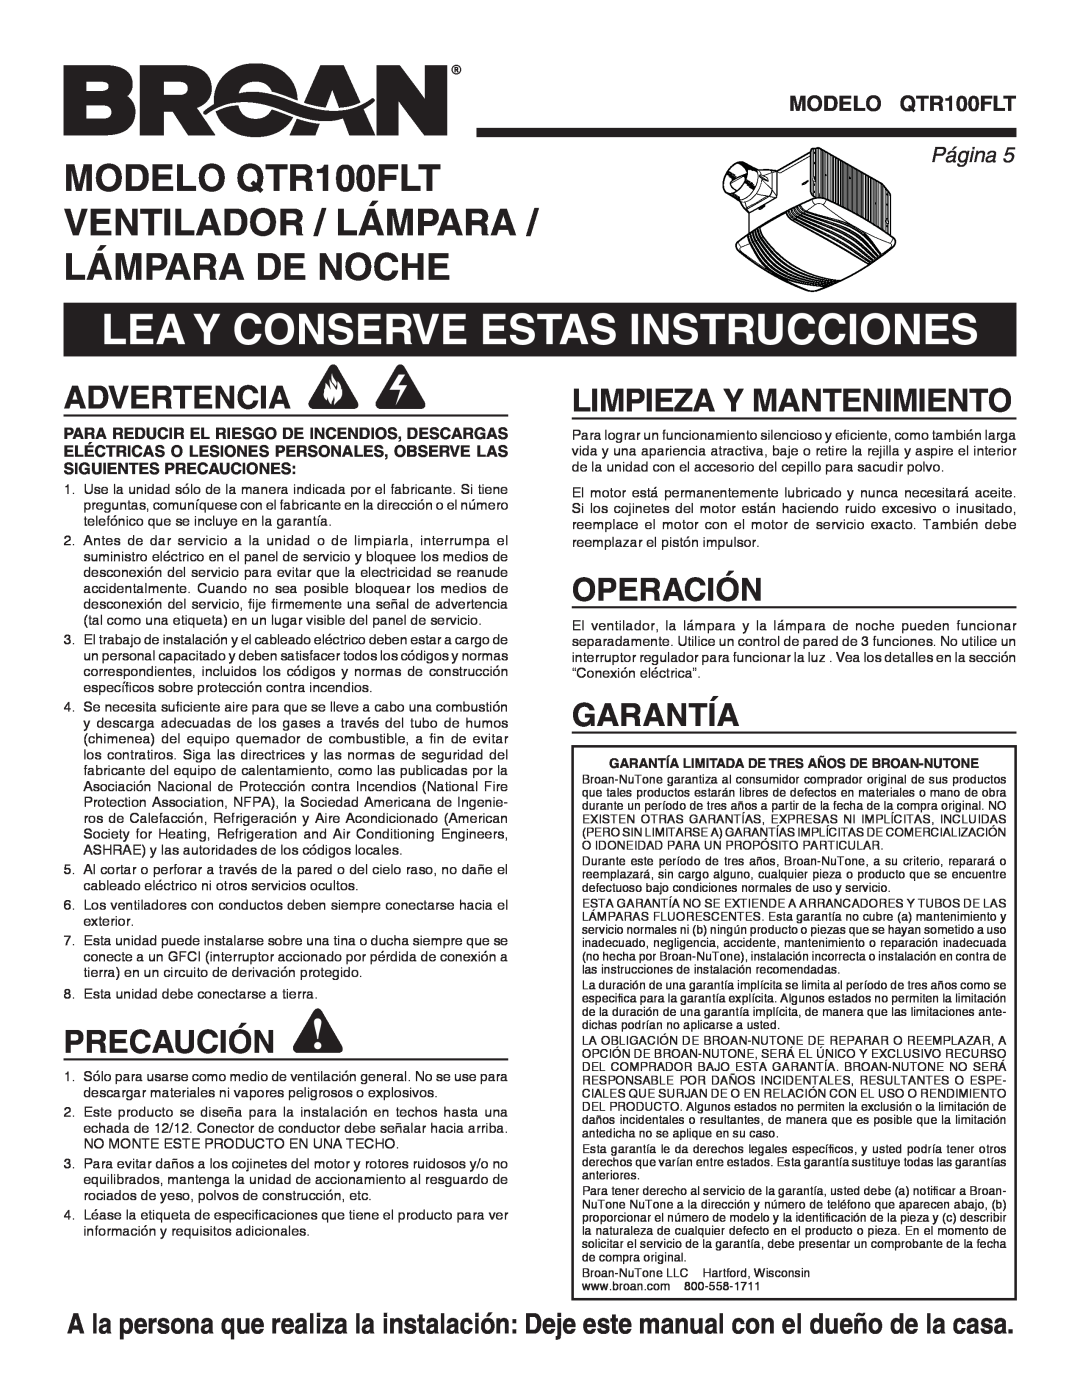 Broan QTR100FLT Lea Y Conserve Estas Instrucciones, Advertencia, Precaución, Limpieza Y Mantenimiento, Operación, Garantía 